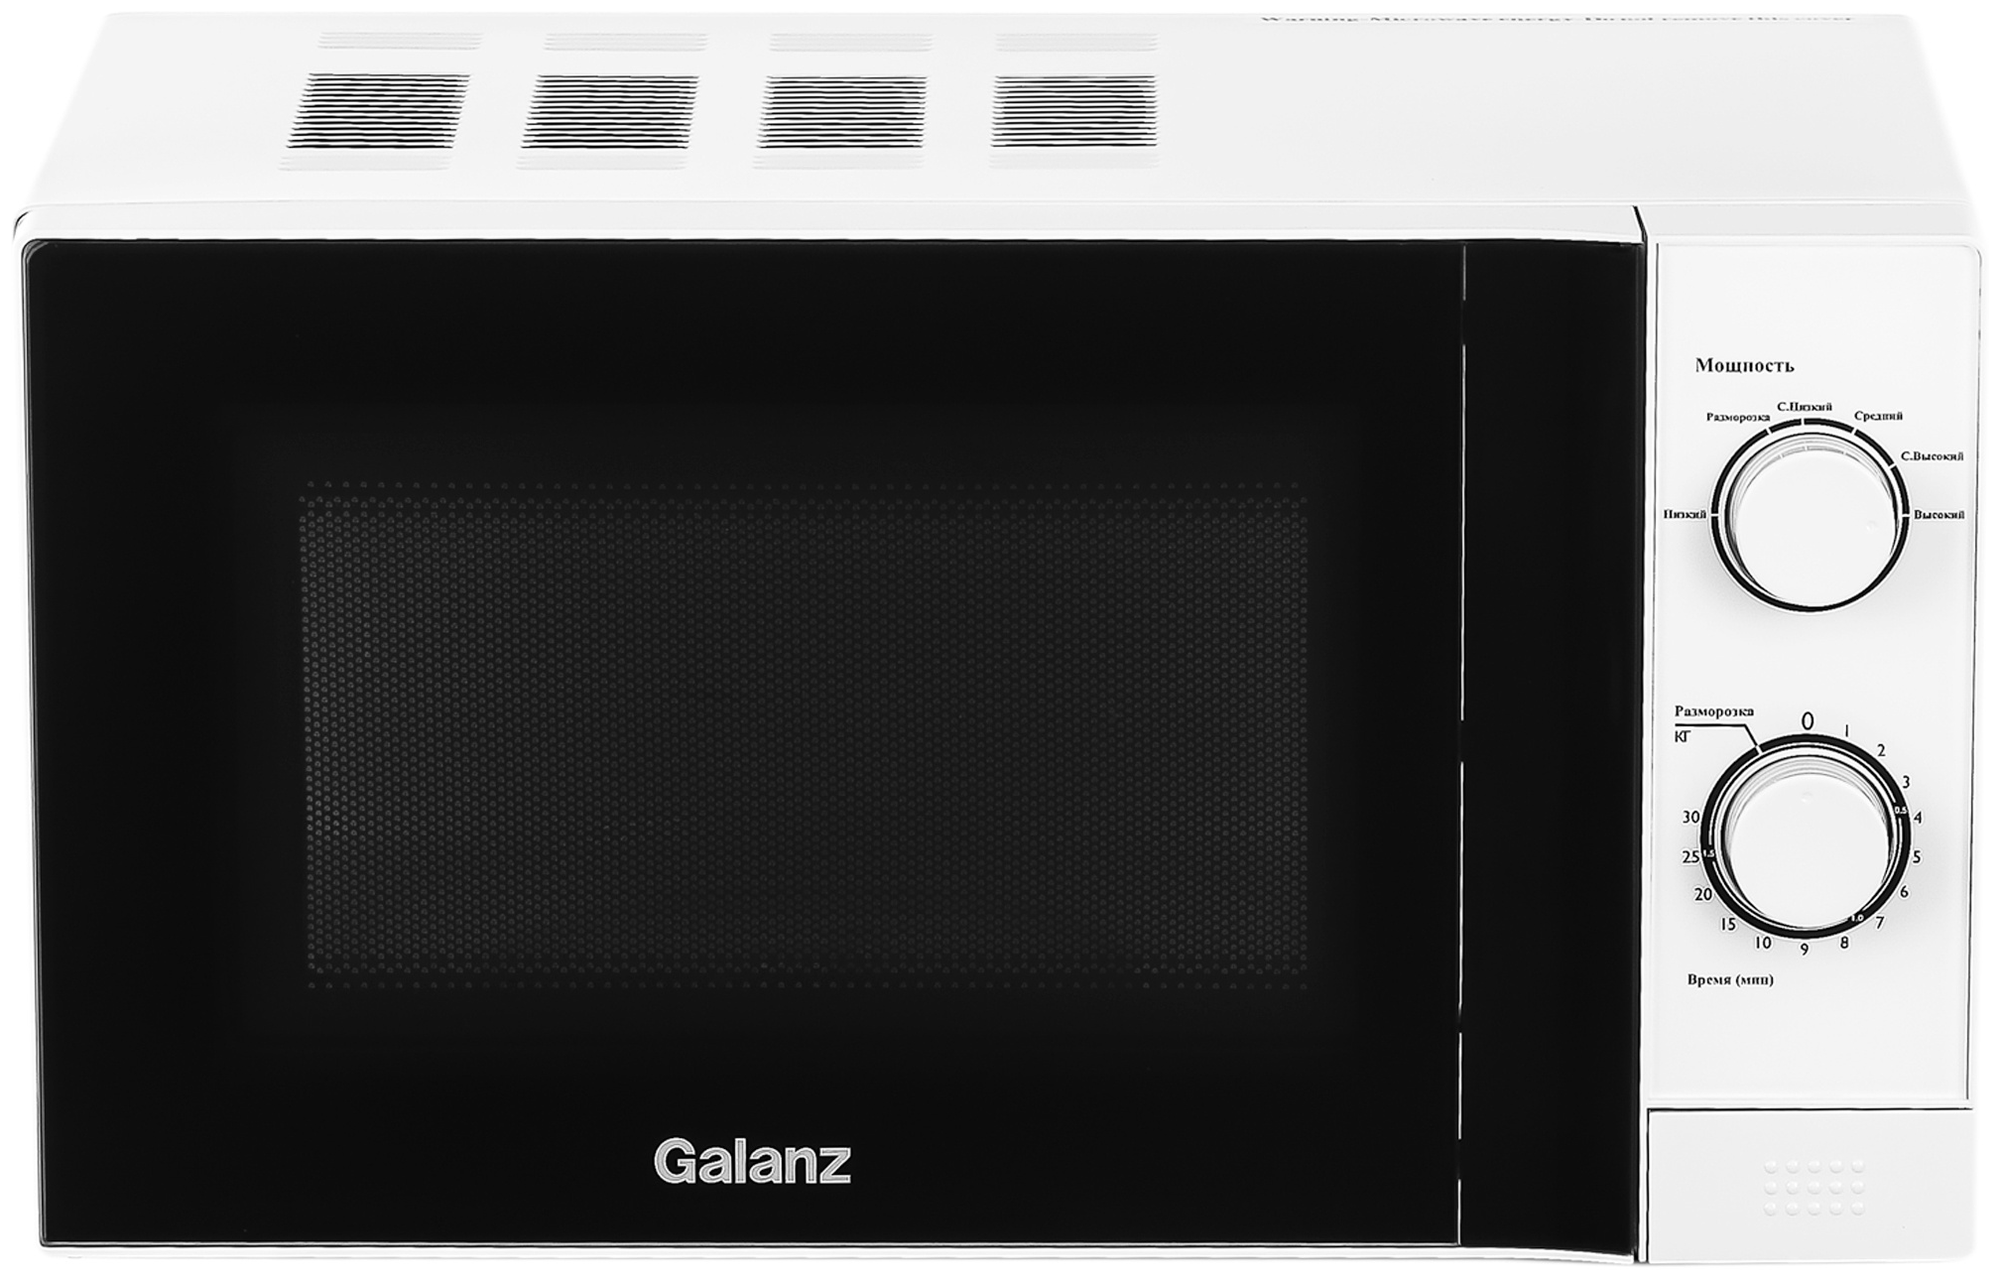 Микроволновая печь Galanz MOS-2009MW белый